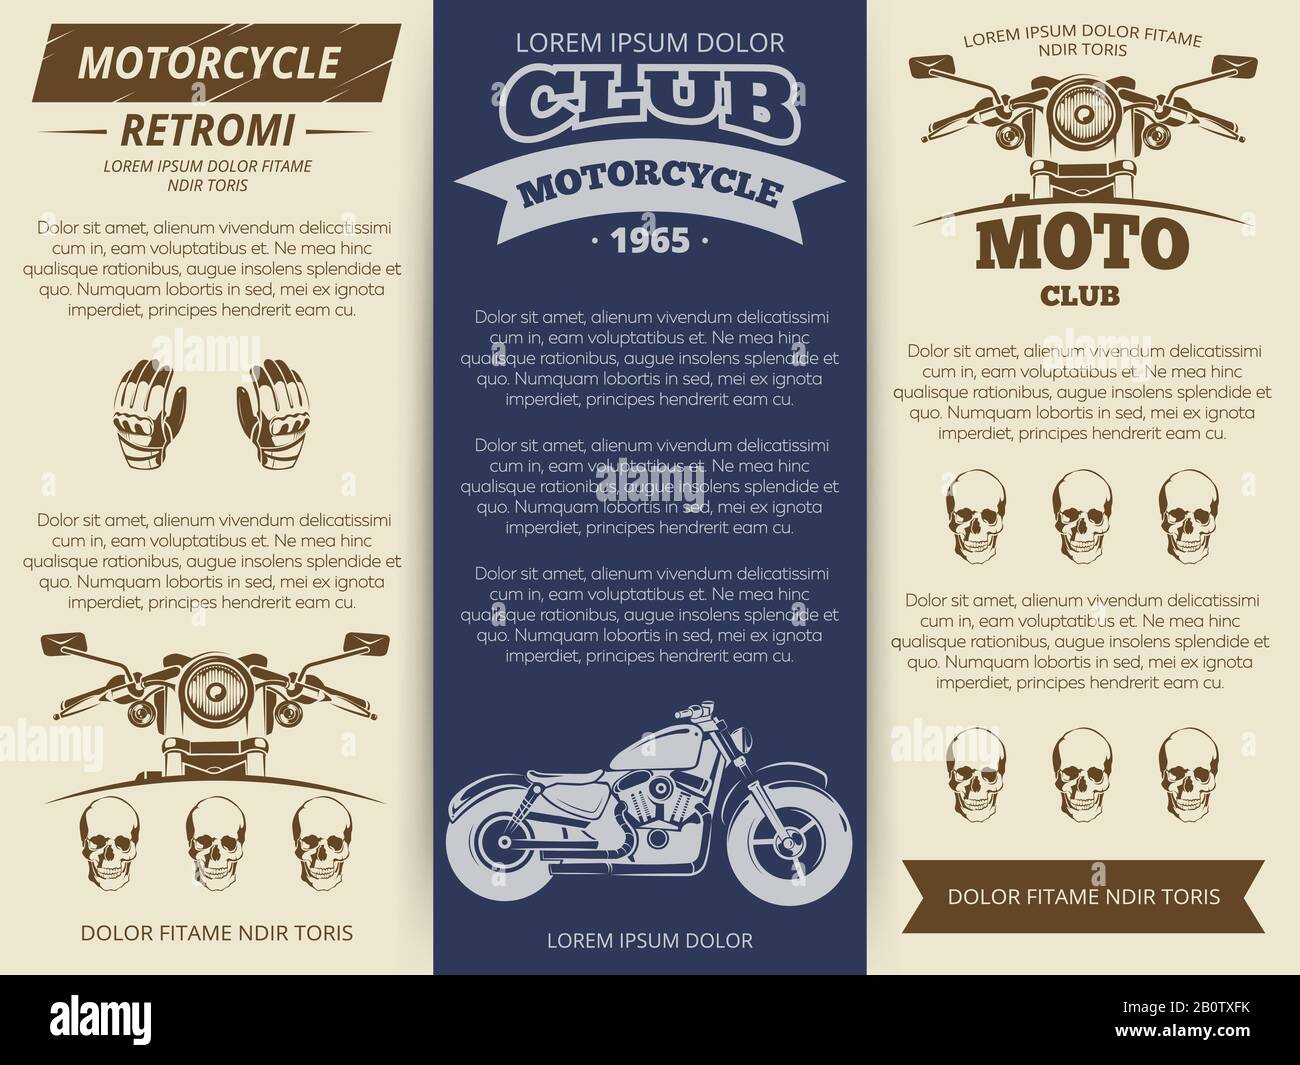 Moto Club Vintage Broschüre oder Banner Vorlage. Vektorgrafiken festlegen Stock Vektor